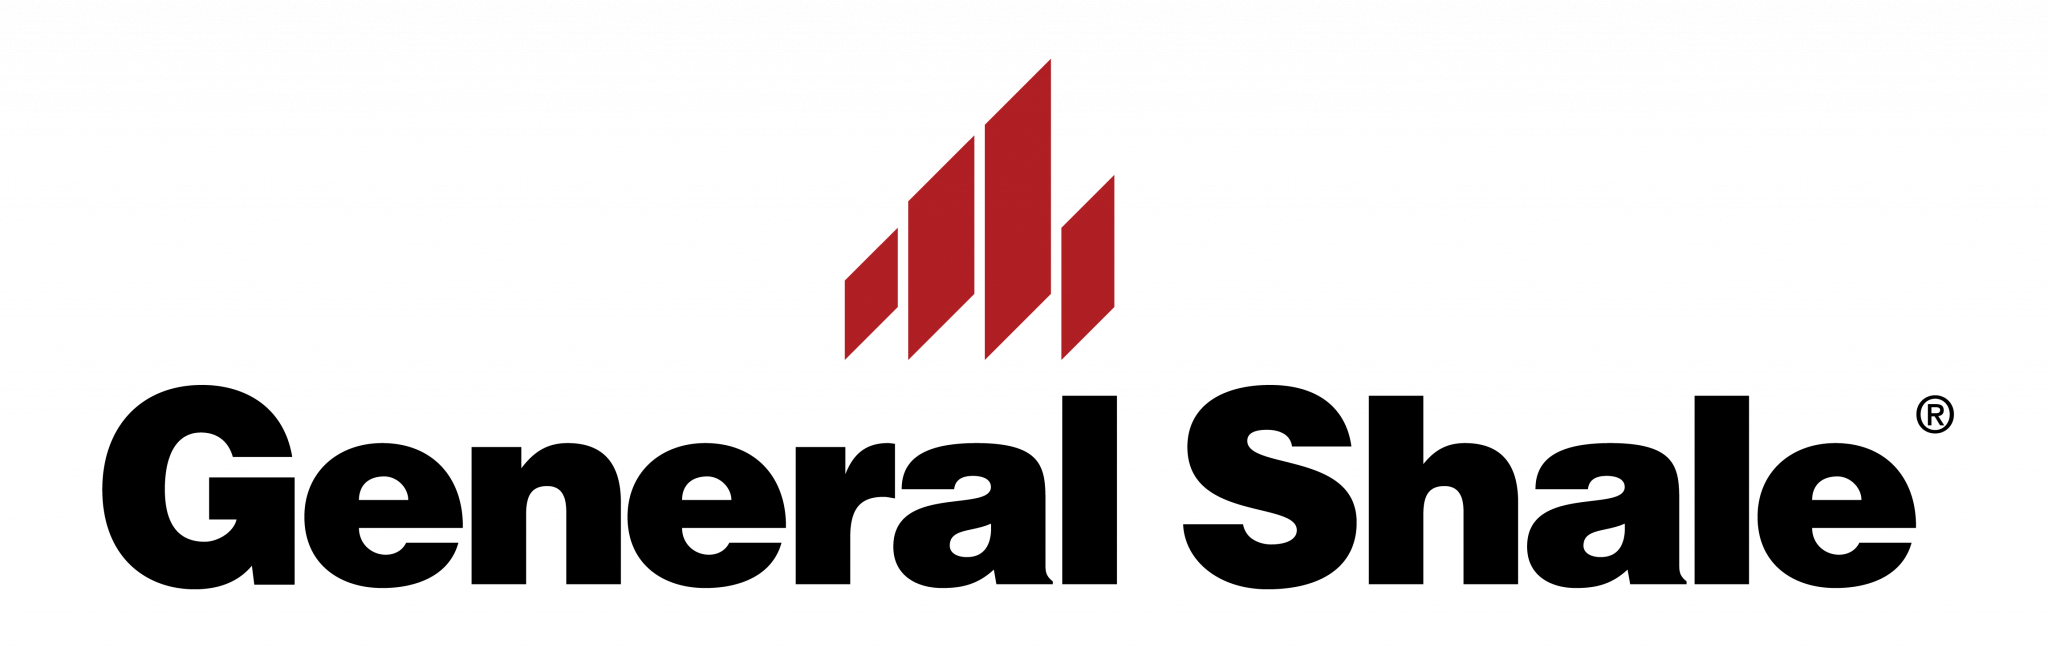 general shale logo.png